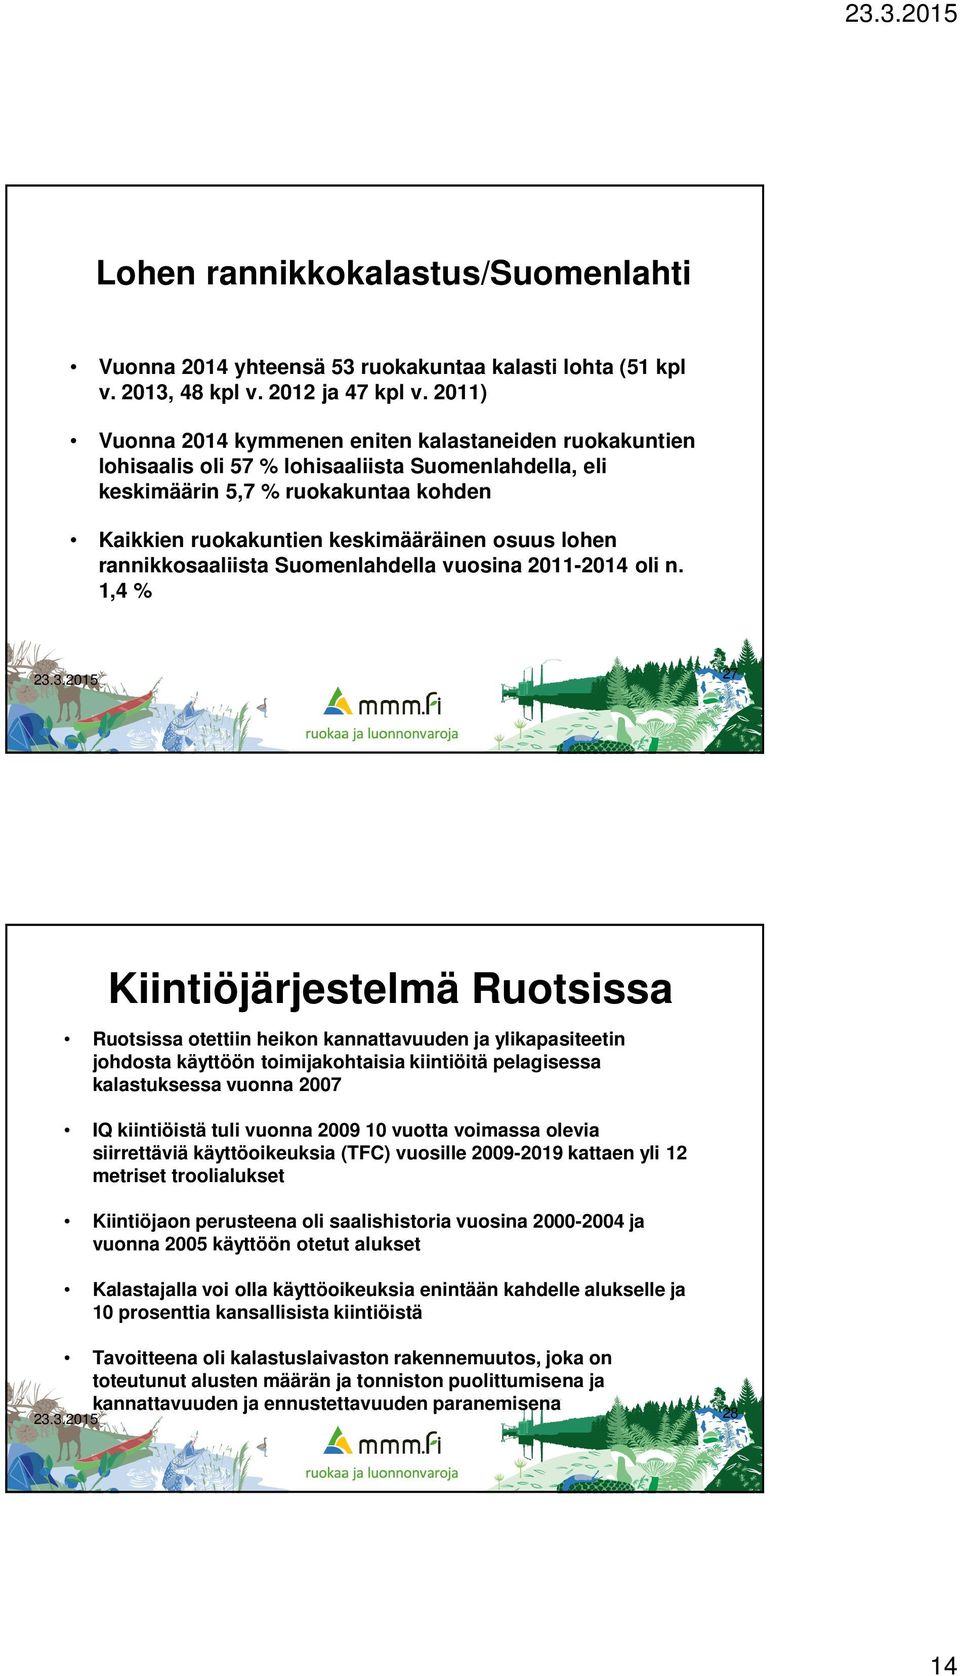 lohen rannikkosaaliista Suomenlahdella vuosina 2011-2014 oli n.